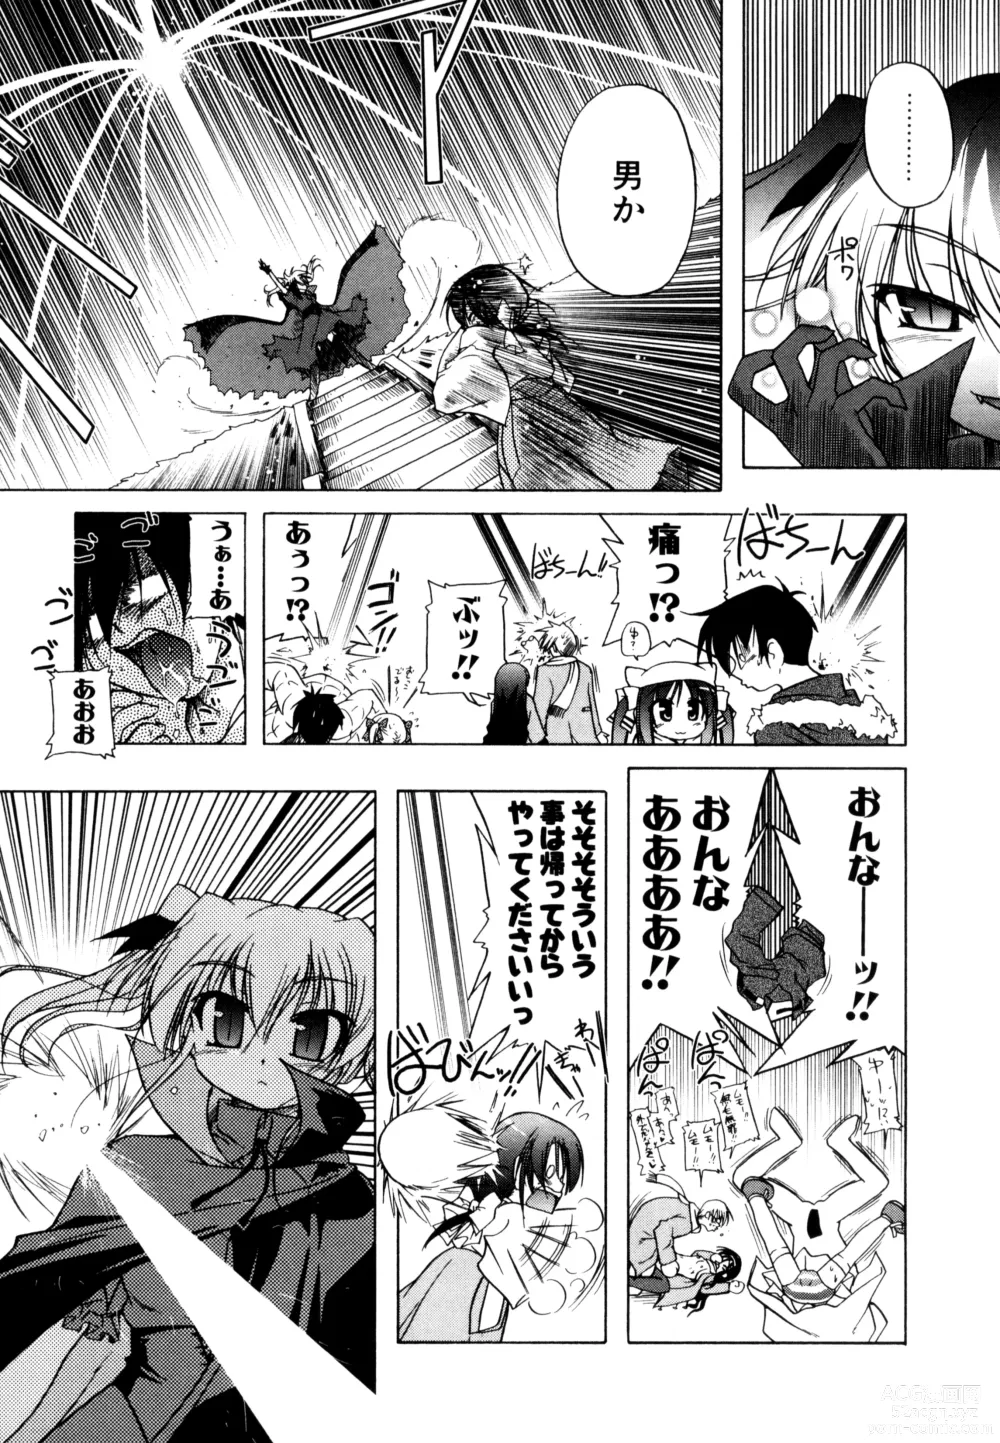 Page 9 of manga Kupa Resort